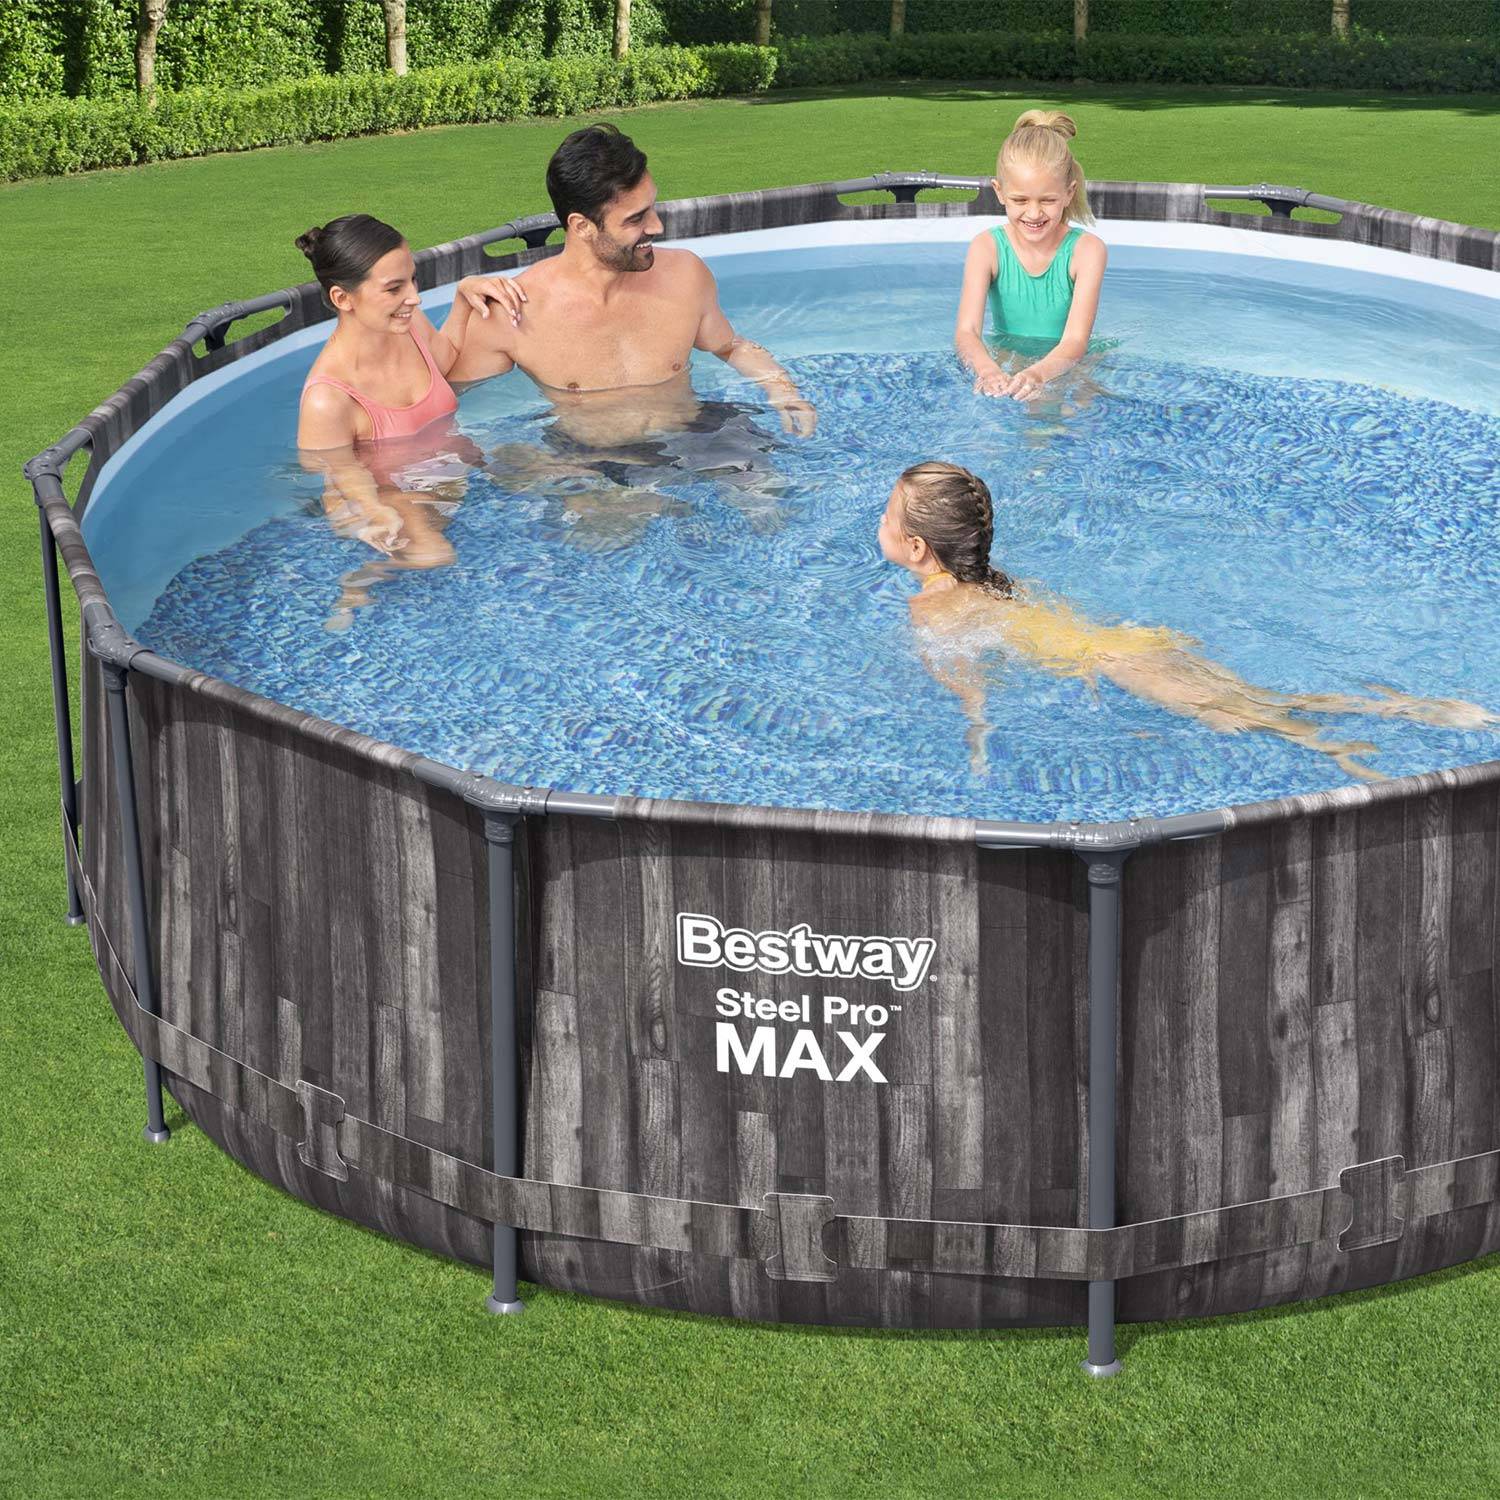 Piscina tubolare BESTWAY - Opalite grigia - aspetto legno, rotonda Ø3,6m con pompa di filtraggio, piscina fuori terra, armatura in acciaio Photo3